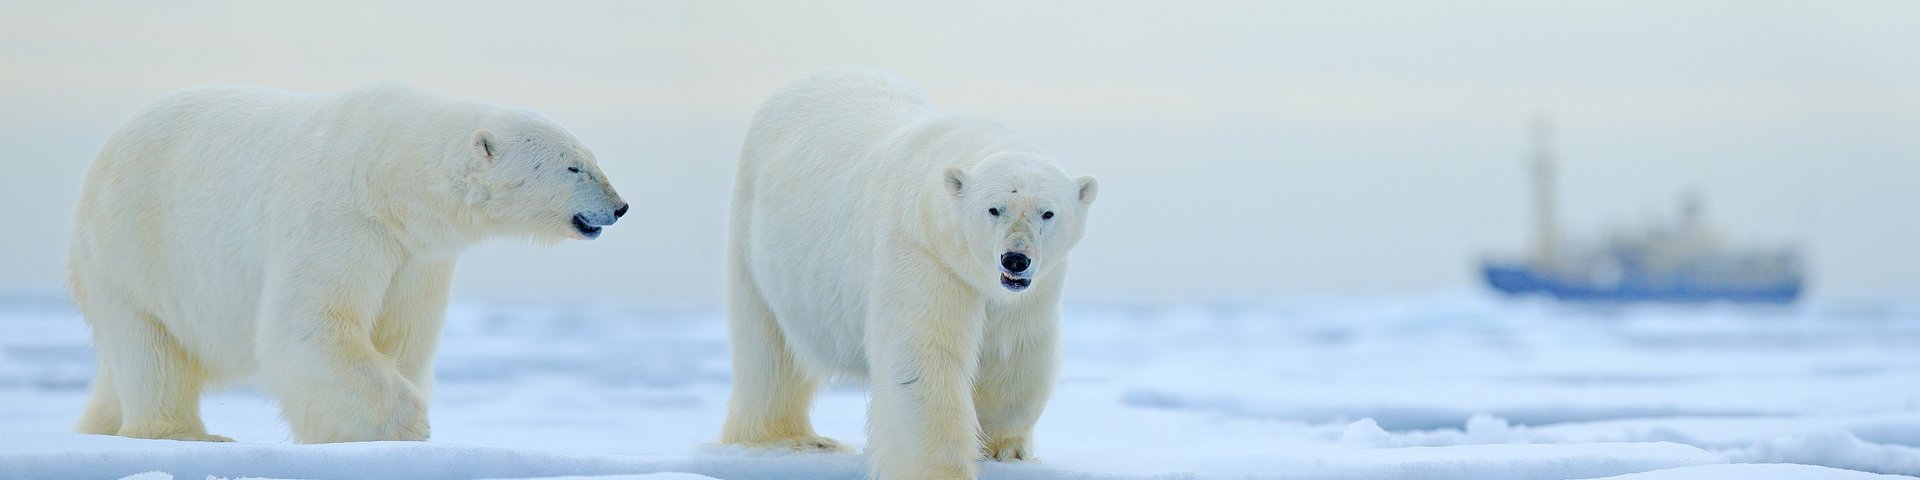 Eisbären in der russischen Arktis